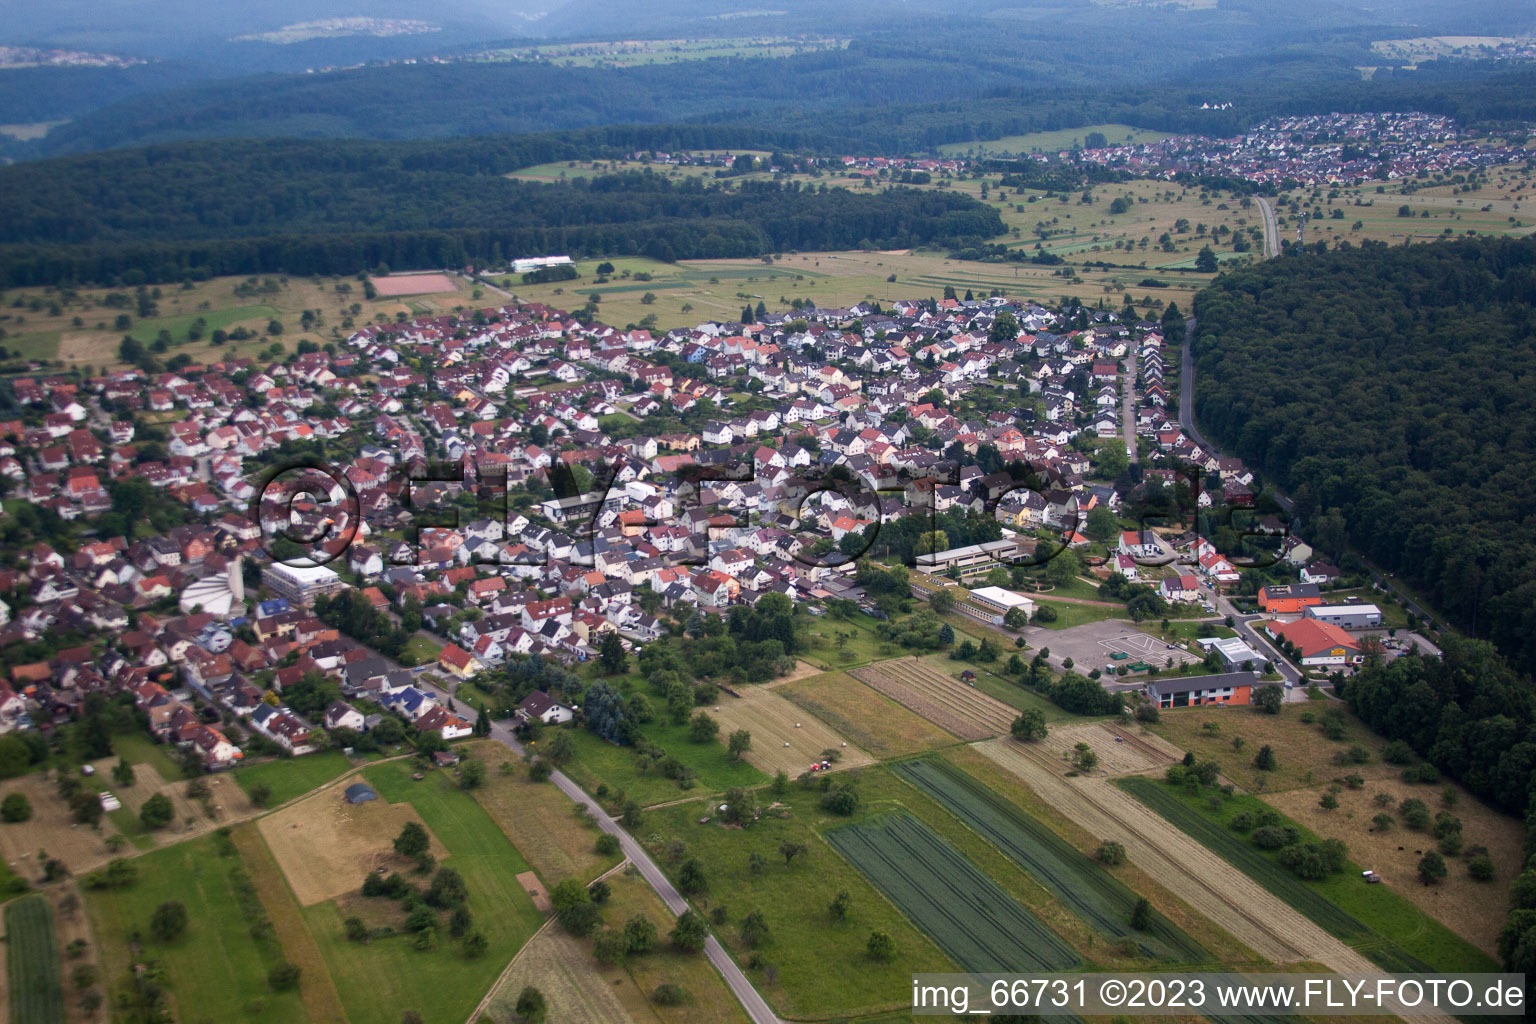 Luftbild von Ortsteil Spessart in Ettlingen im Bundesland Baden-Württemberg, Deutschland